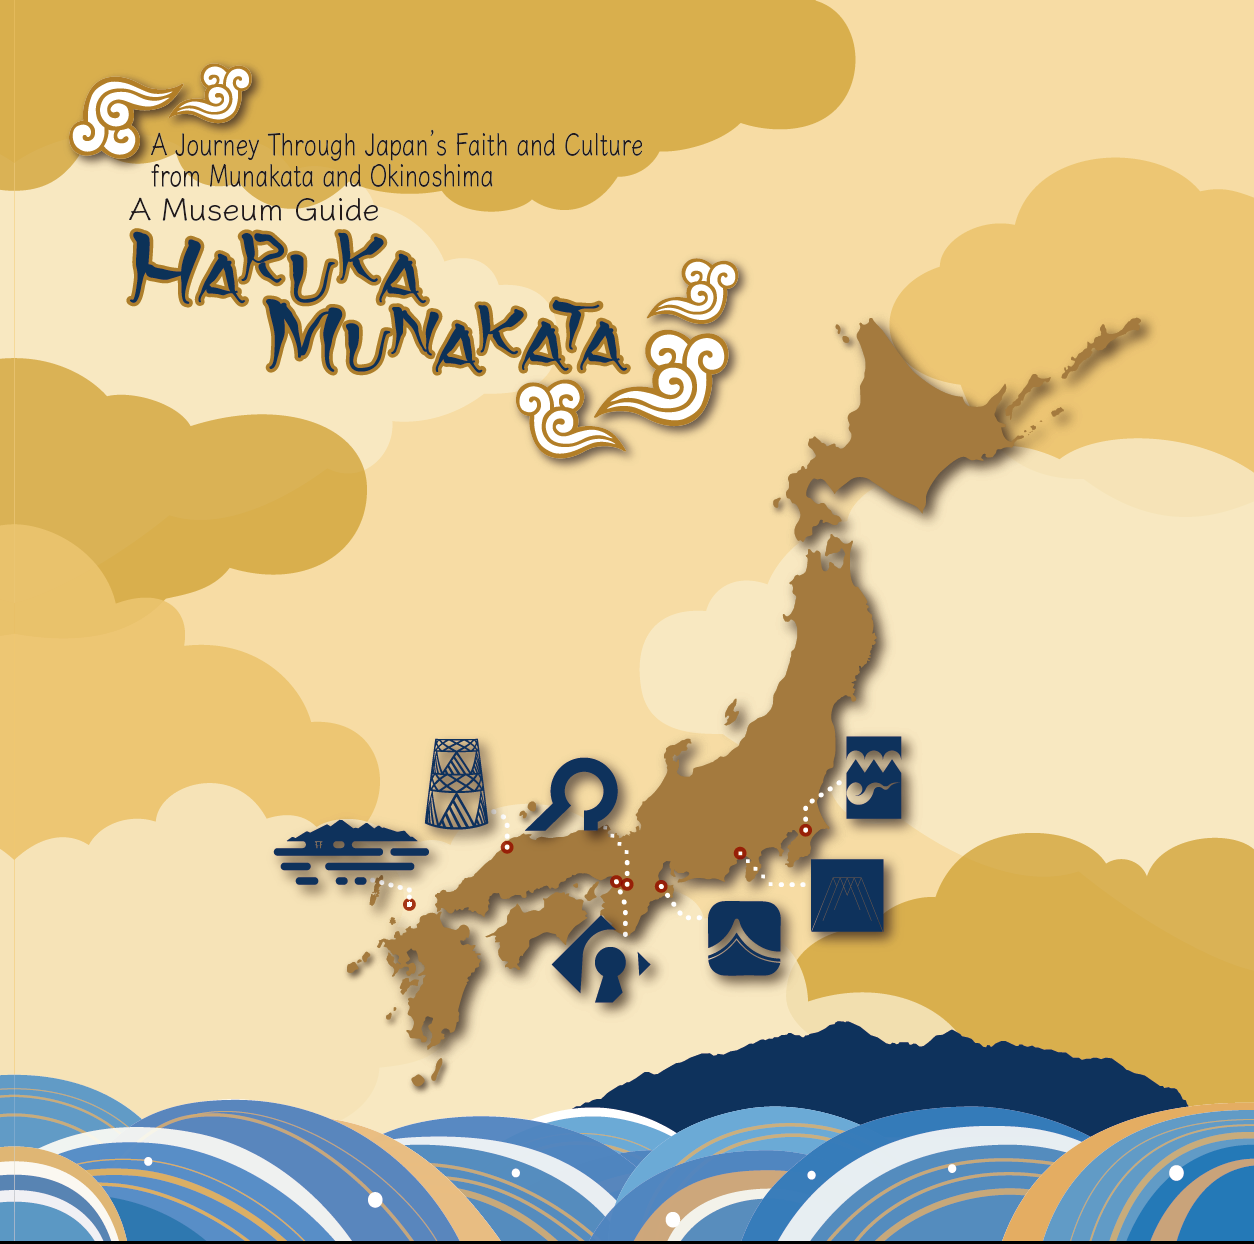 A Museum Guide "HARUKA MUNAKATA" img